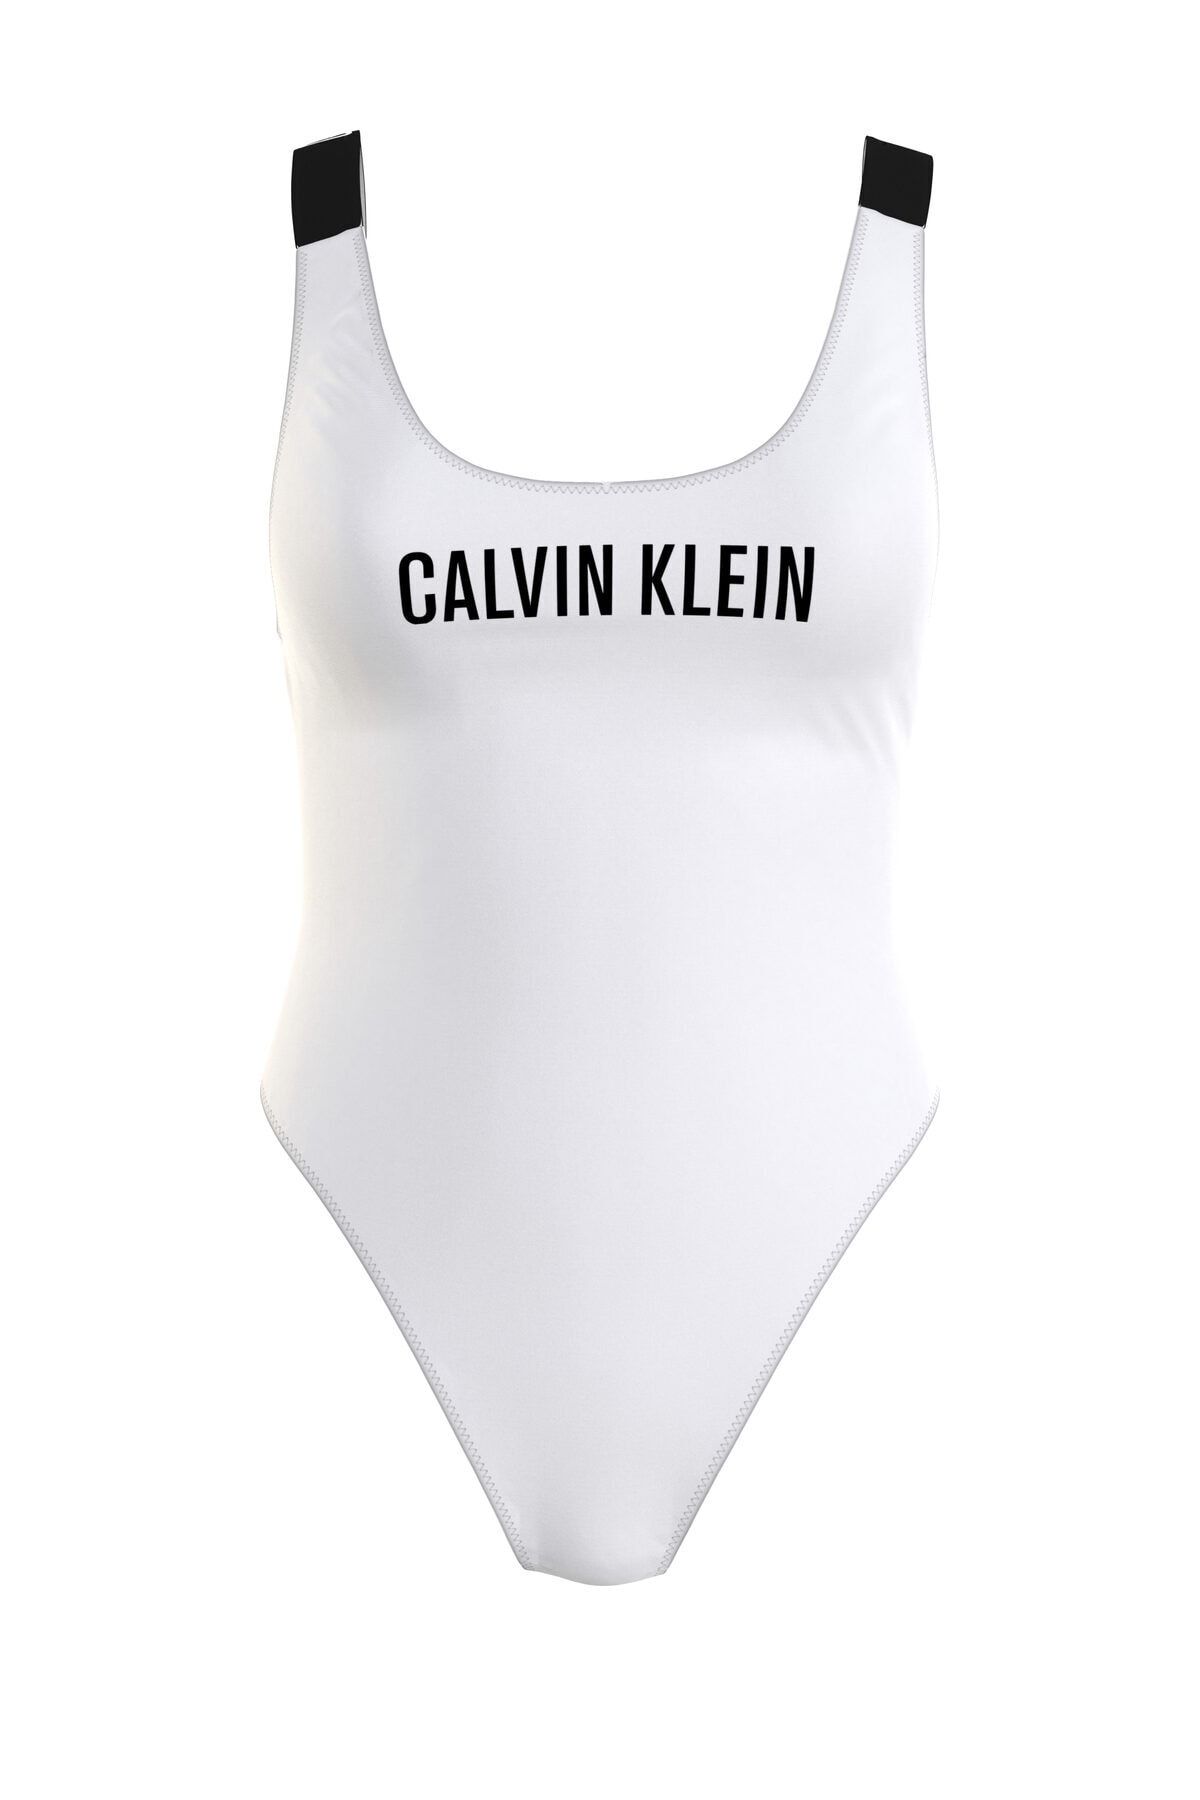 Calvin Klein Kadın  Calvın Kleın  Mayo Kw0kw1235-ycd